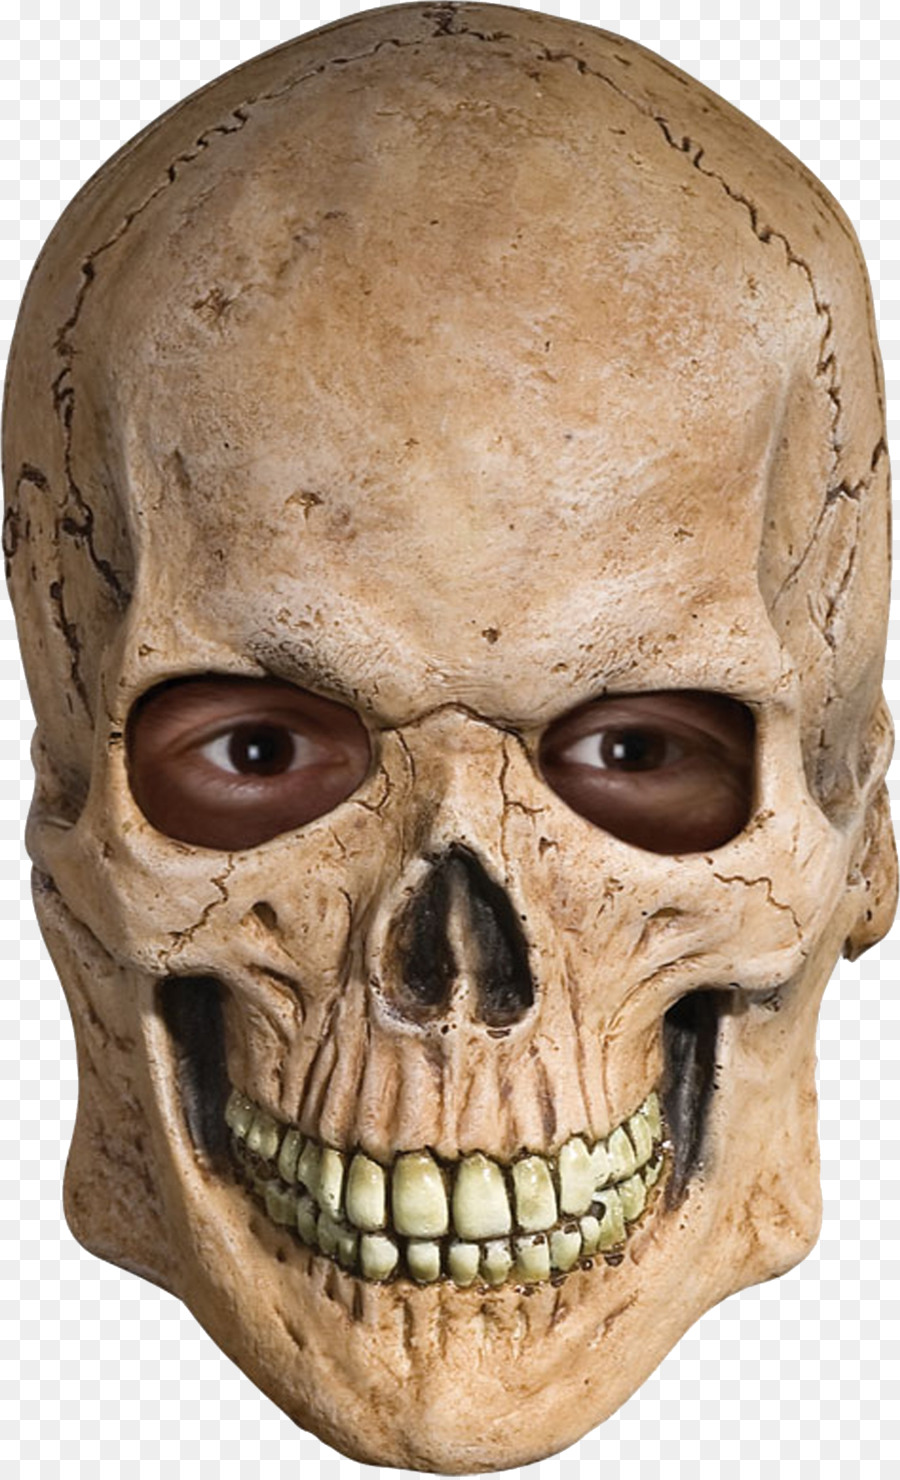 Mask Skull Human skeleton Costume - mask png download - 1473*2418 - Free Transparent Mask png Download.